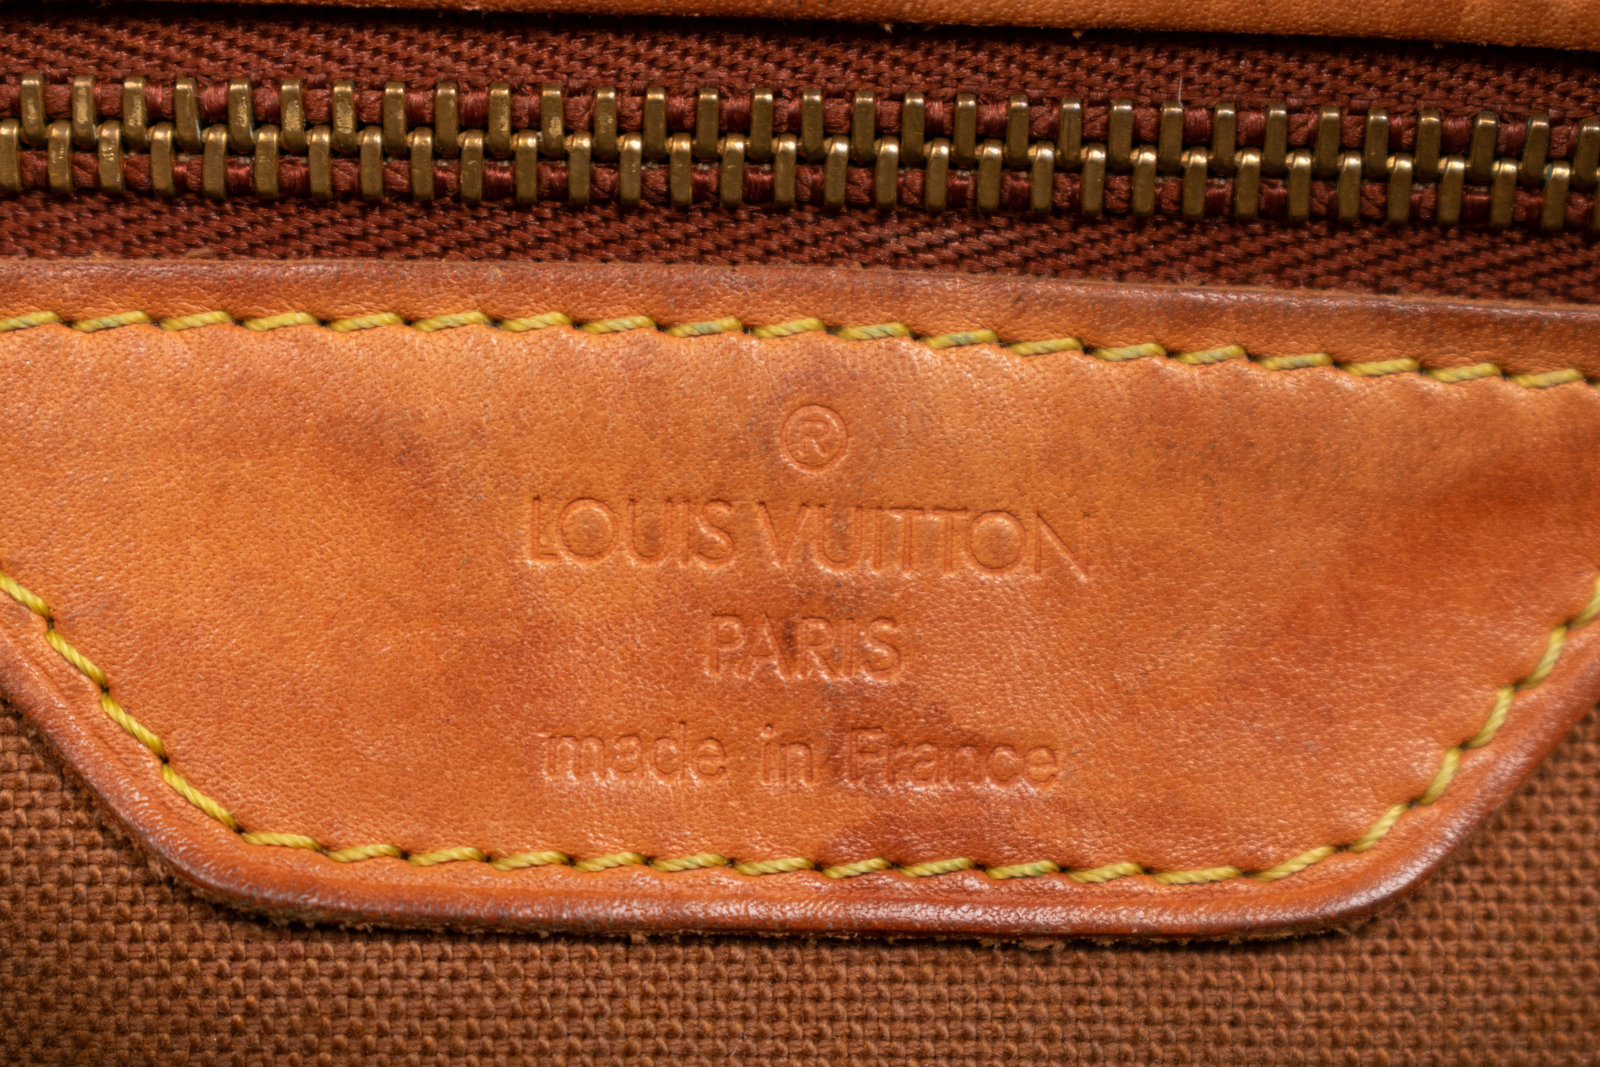 Louis Vuitton Damier Canvas Chelsea Tote Bag - Luxe Purses